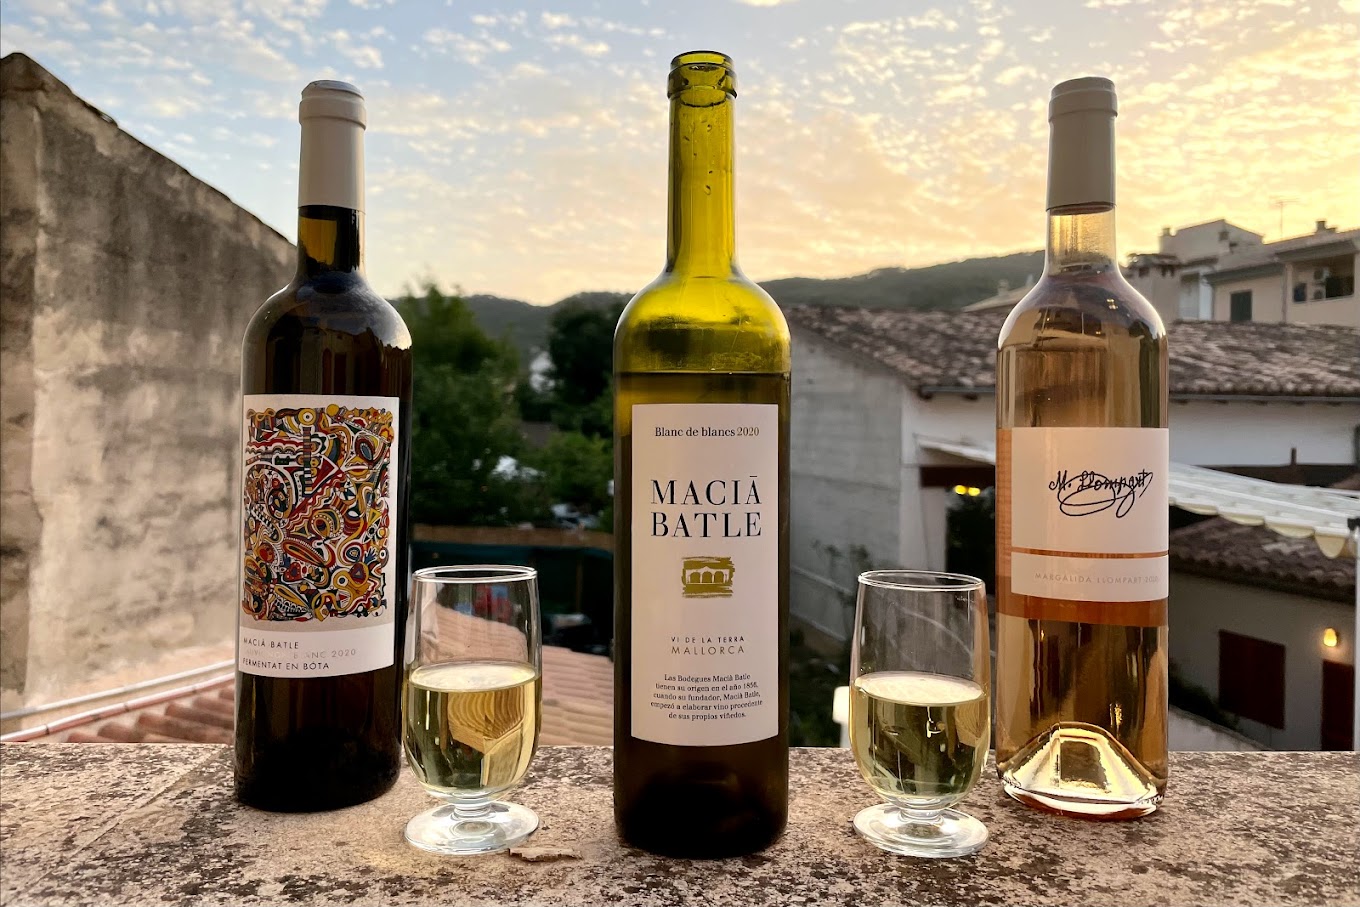 Imagen en perspectiva de 3 vinos Bodegues Macià Batle